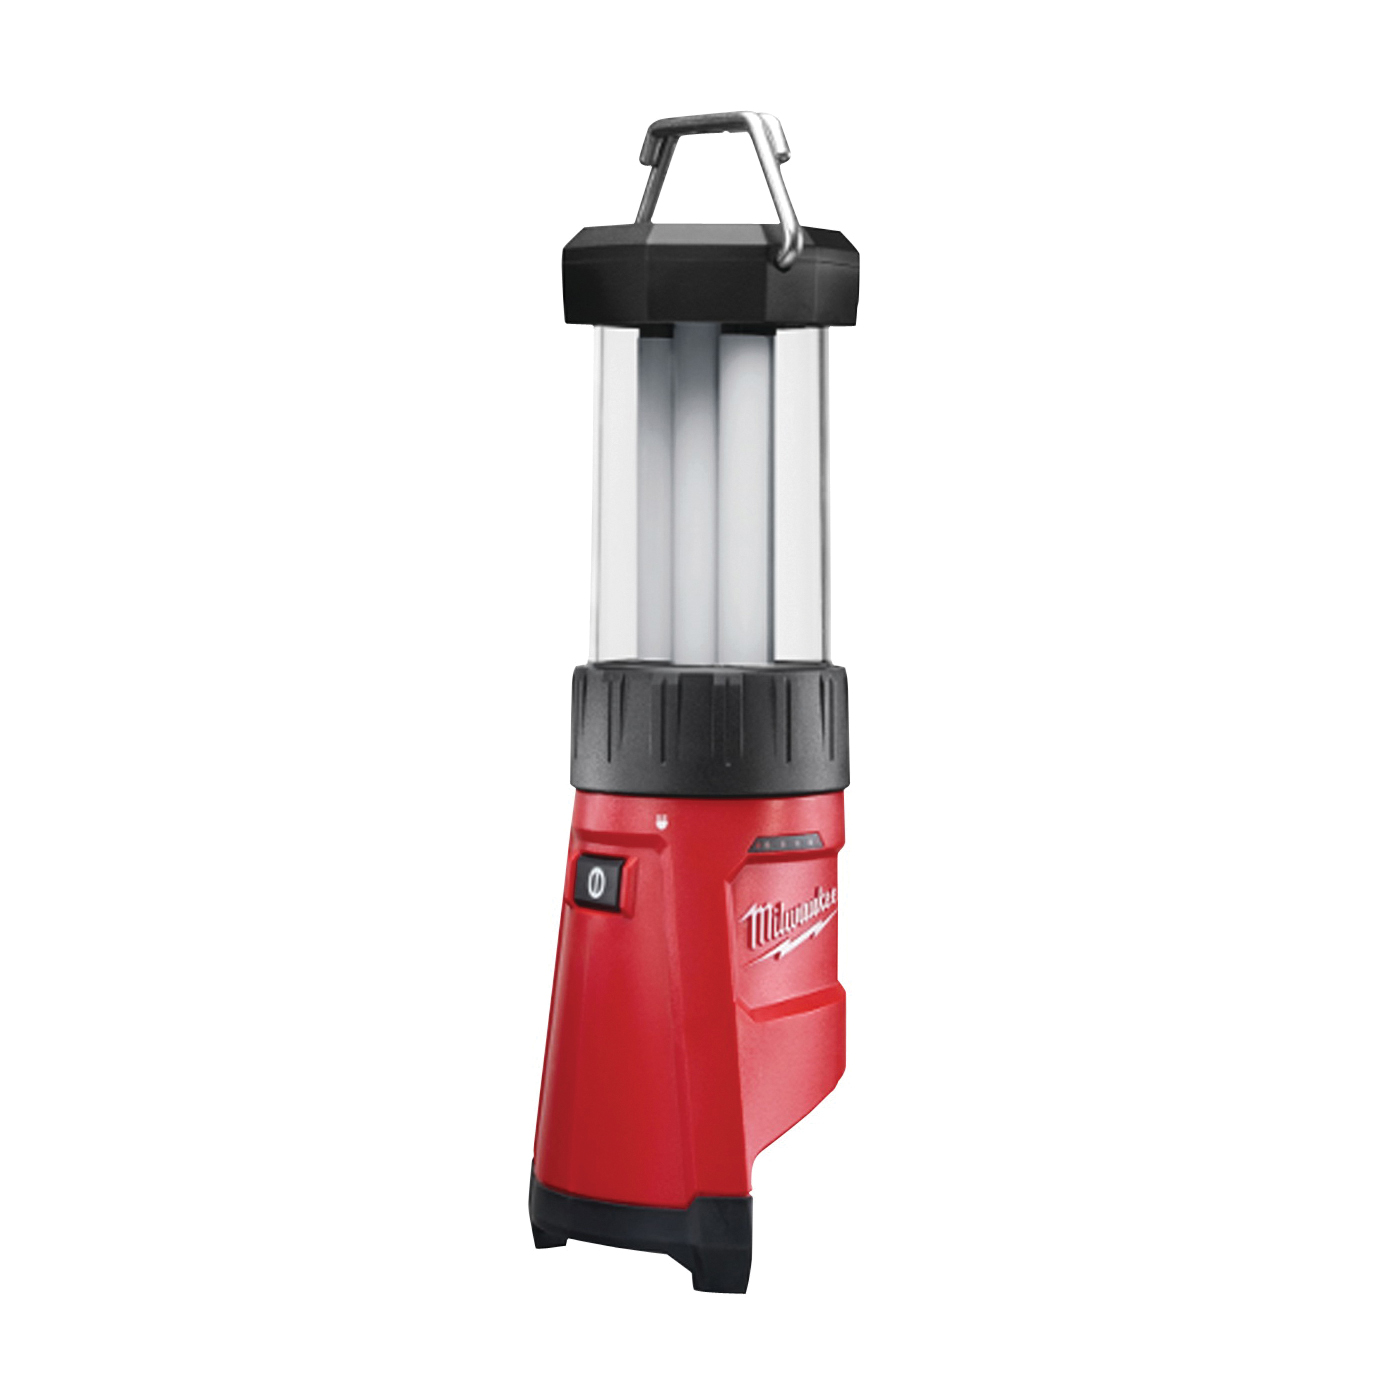 Milwaukee 2362-20 Lantern/Flood Light, LED Lamp, Plastic, Red